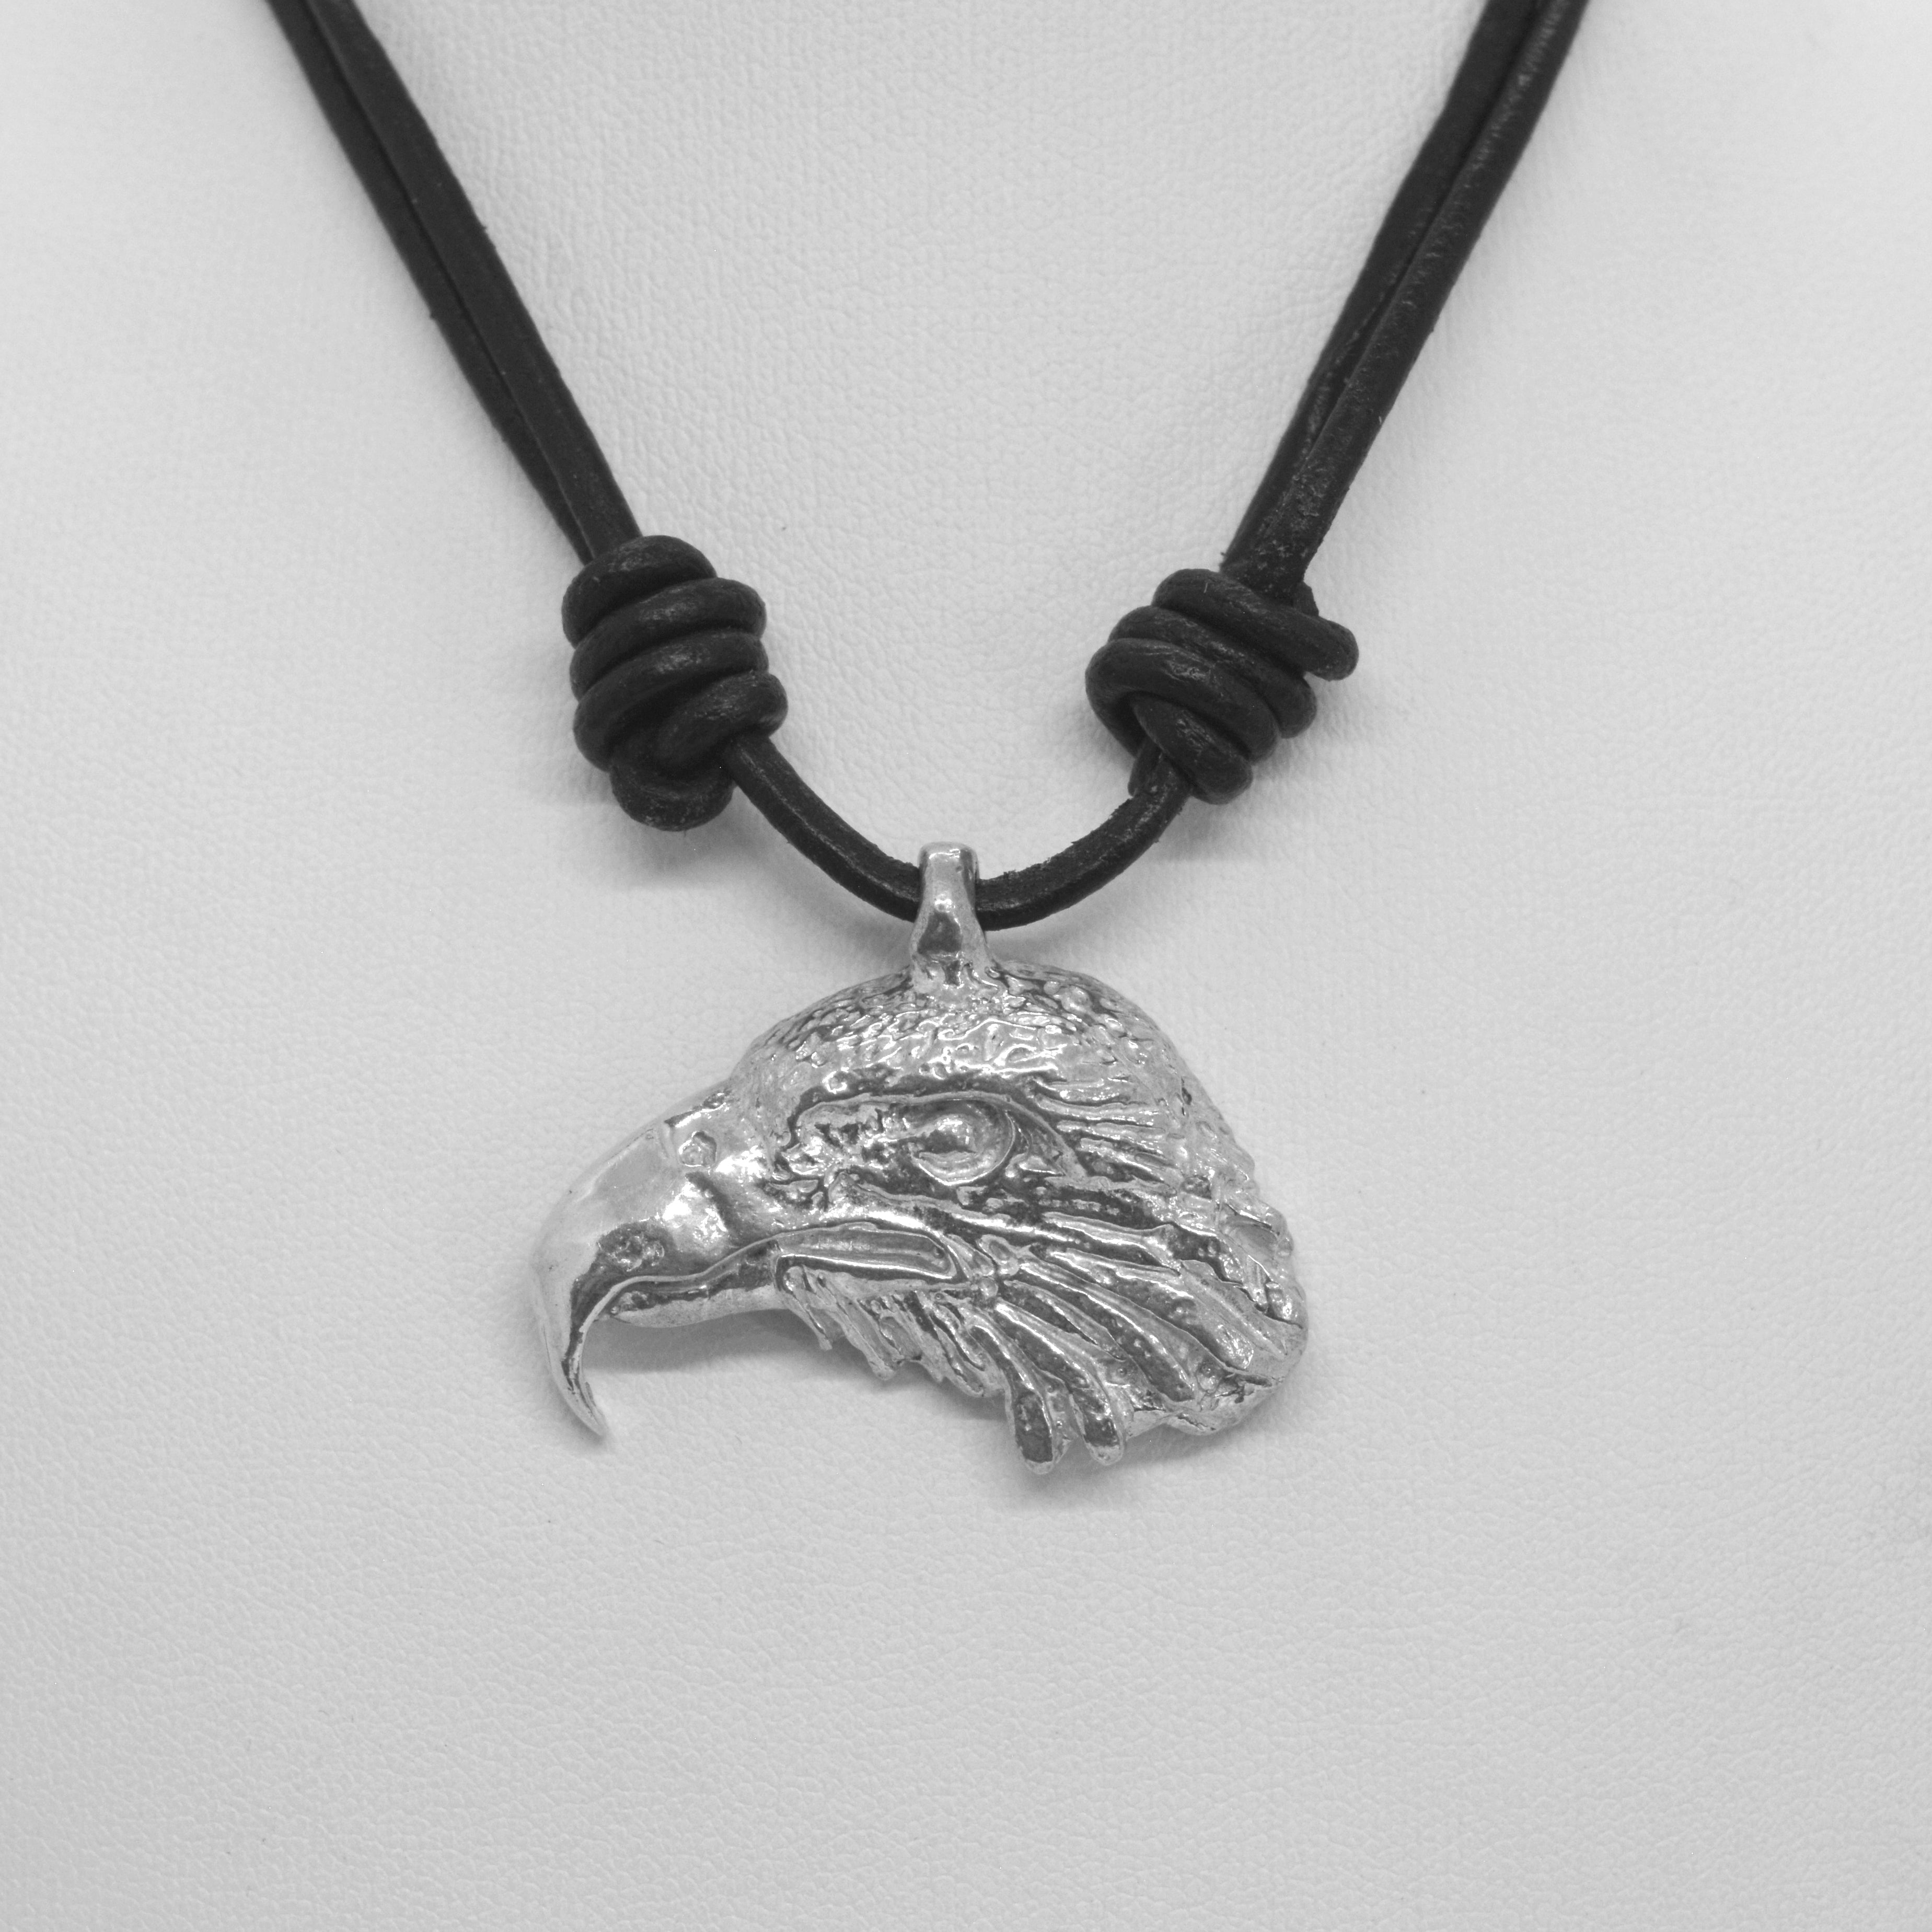 Eagle pendant on leather cord